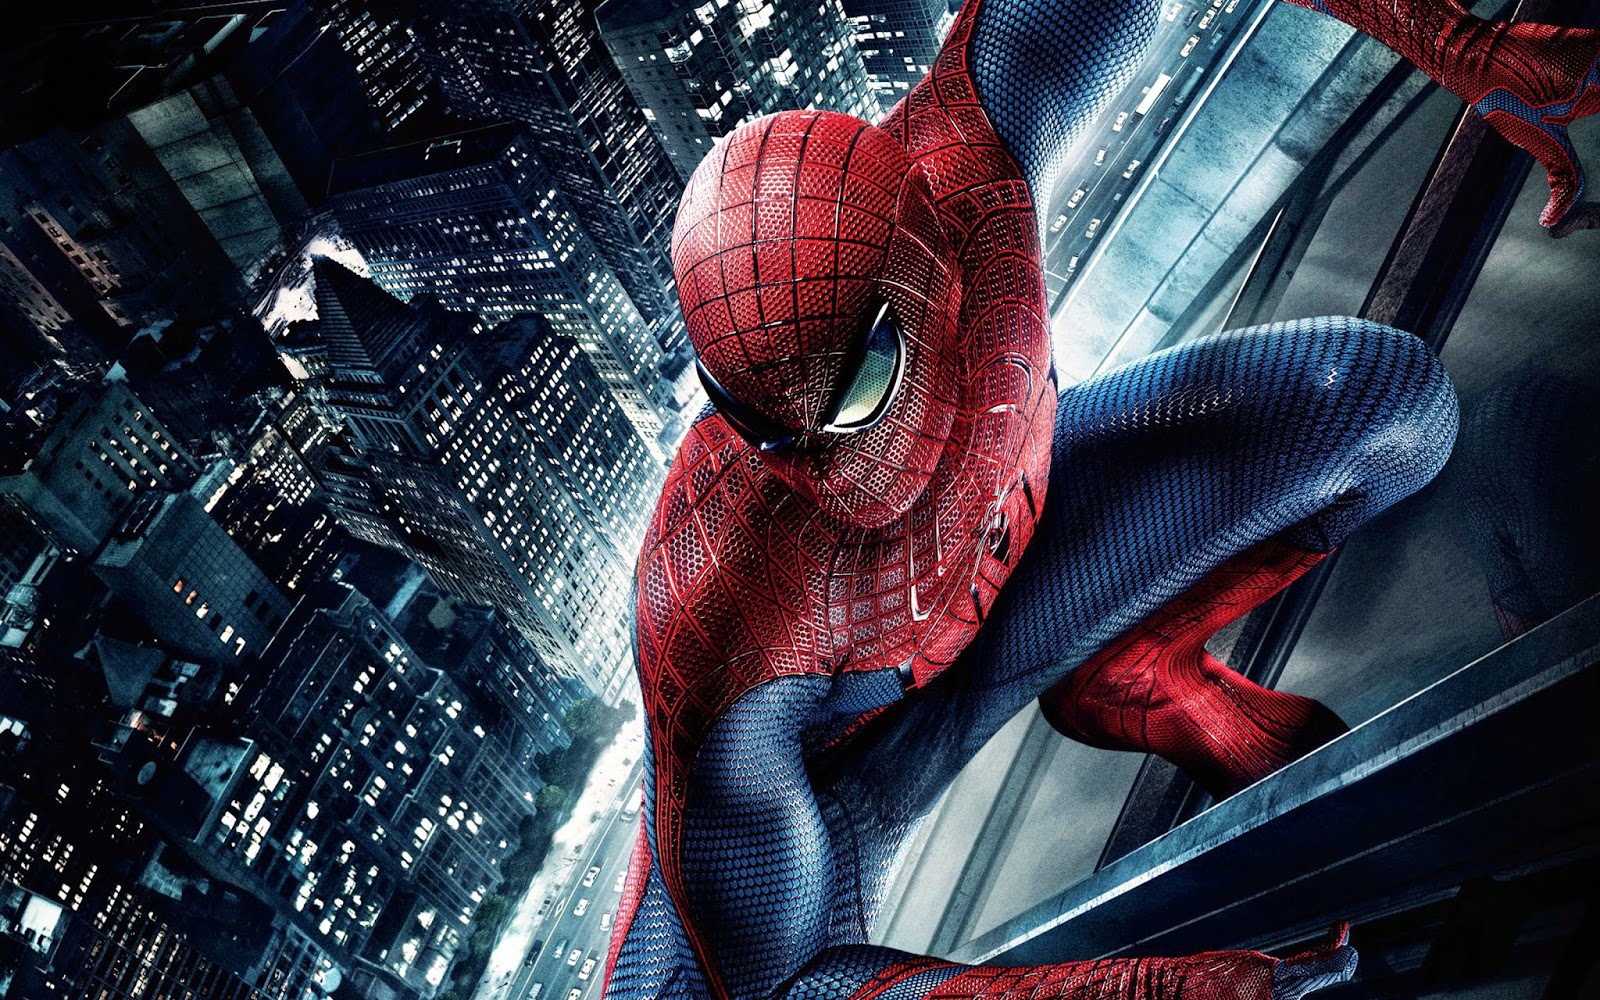 The Amazing Spiderman 3 podr??a adelantar su estreno